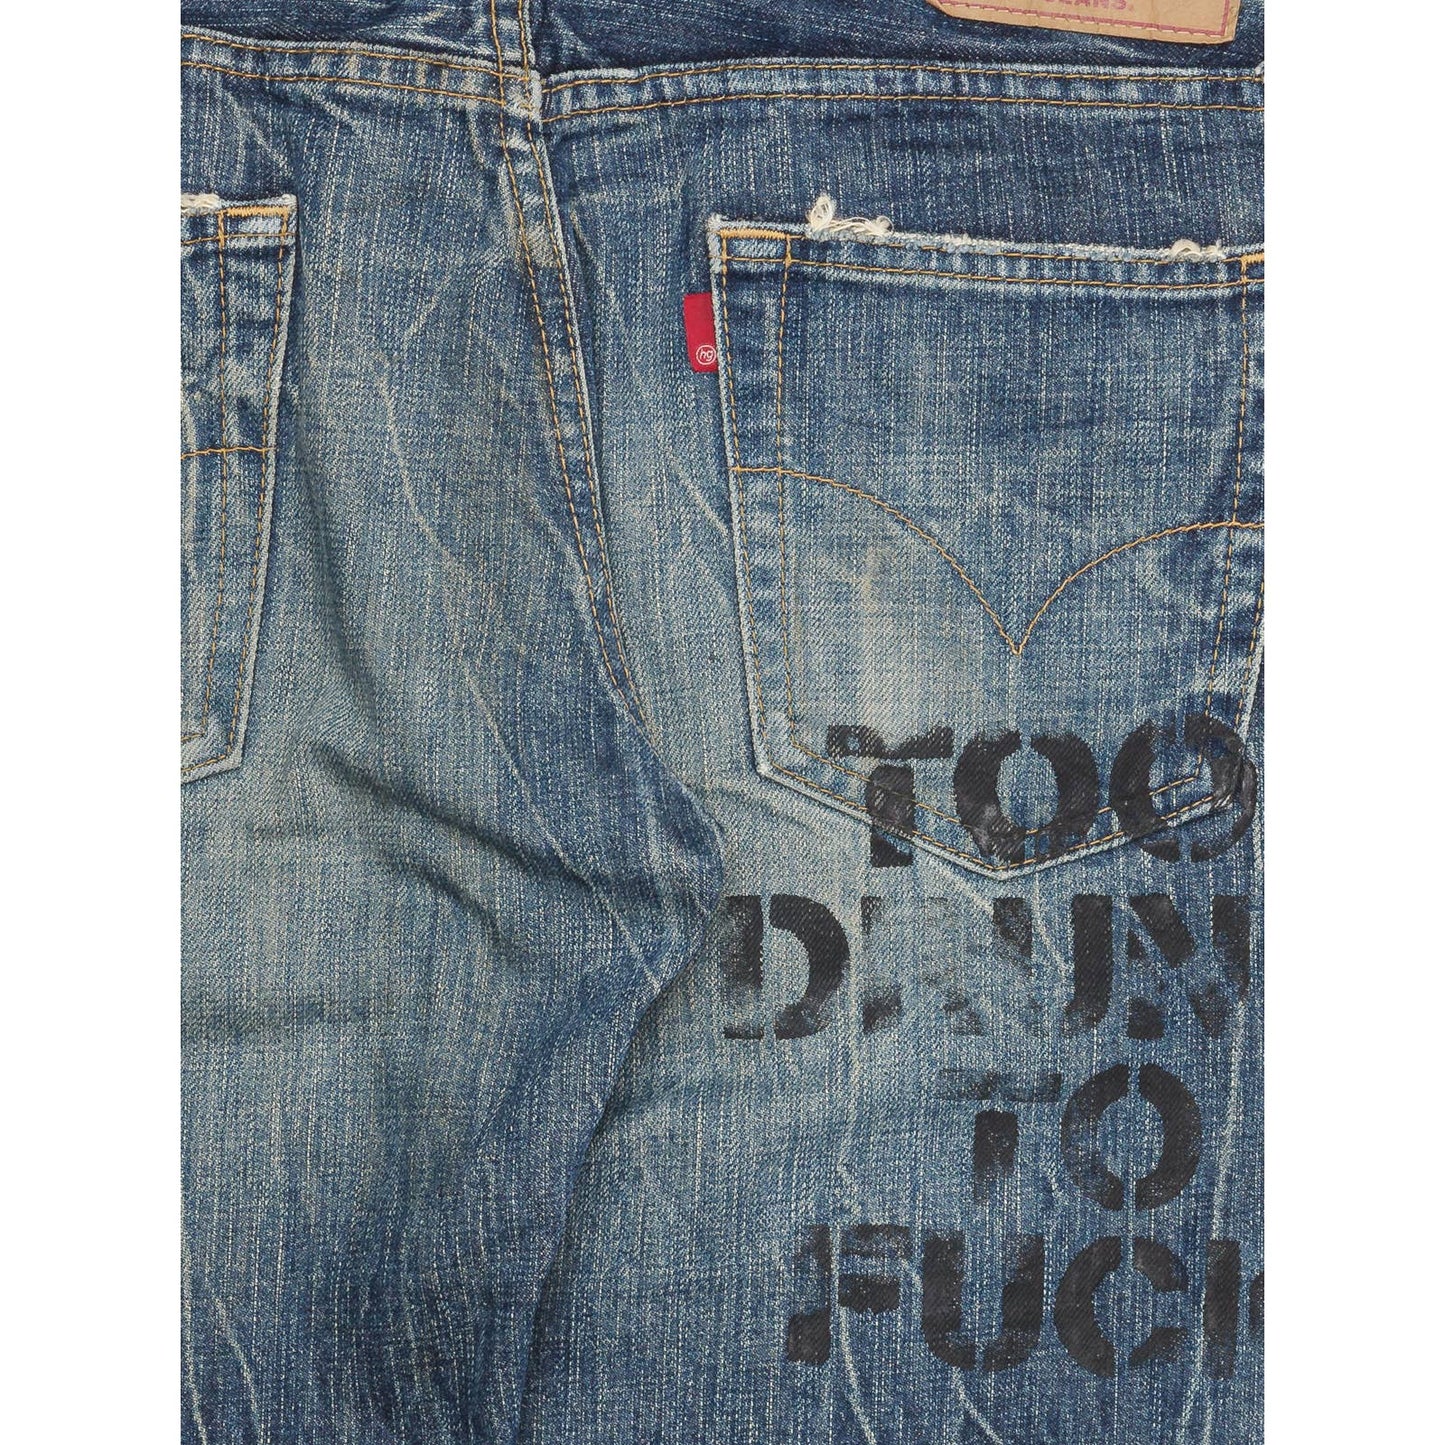 Distressed Rockstar Jeans